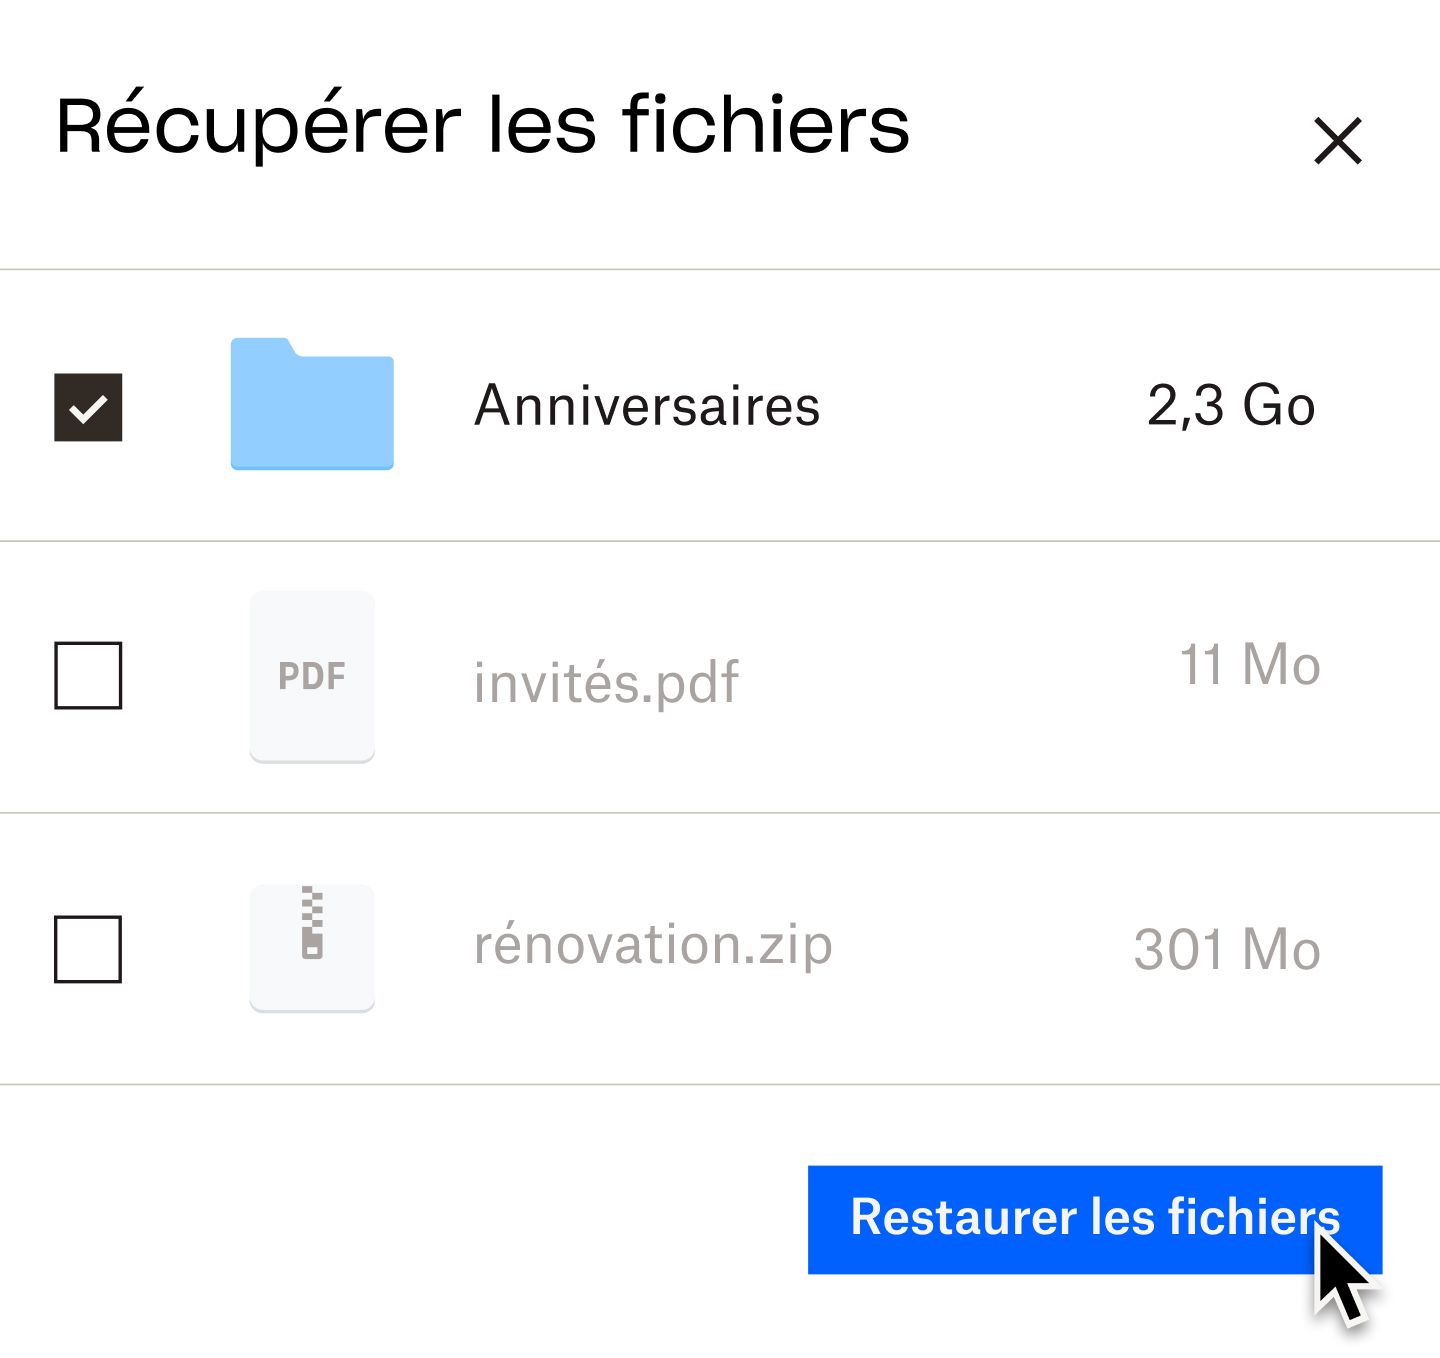 Un utilisateur cliquant sur un bouton bleu intitulé “Restaurer les fichiers”